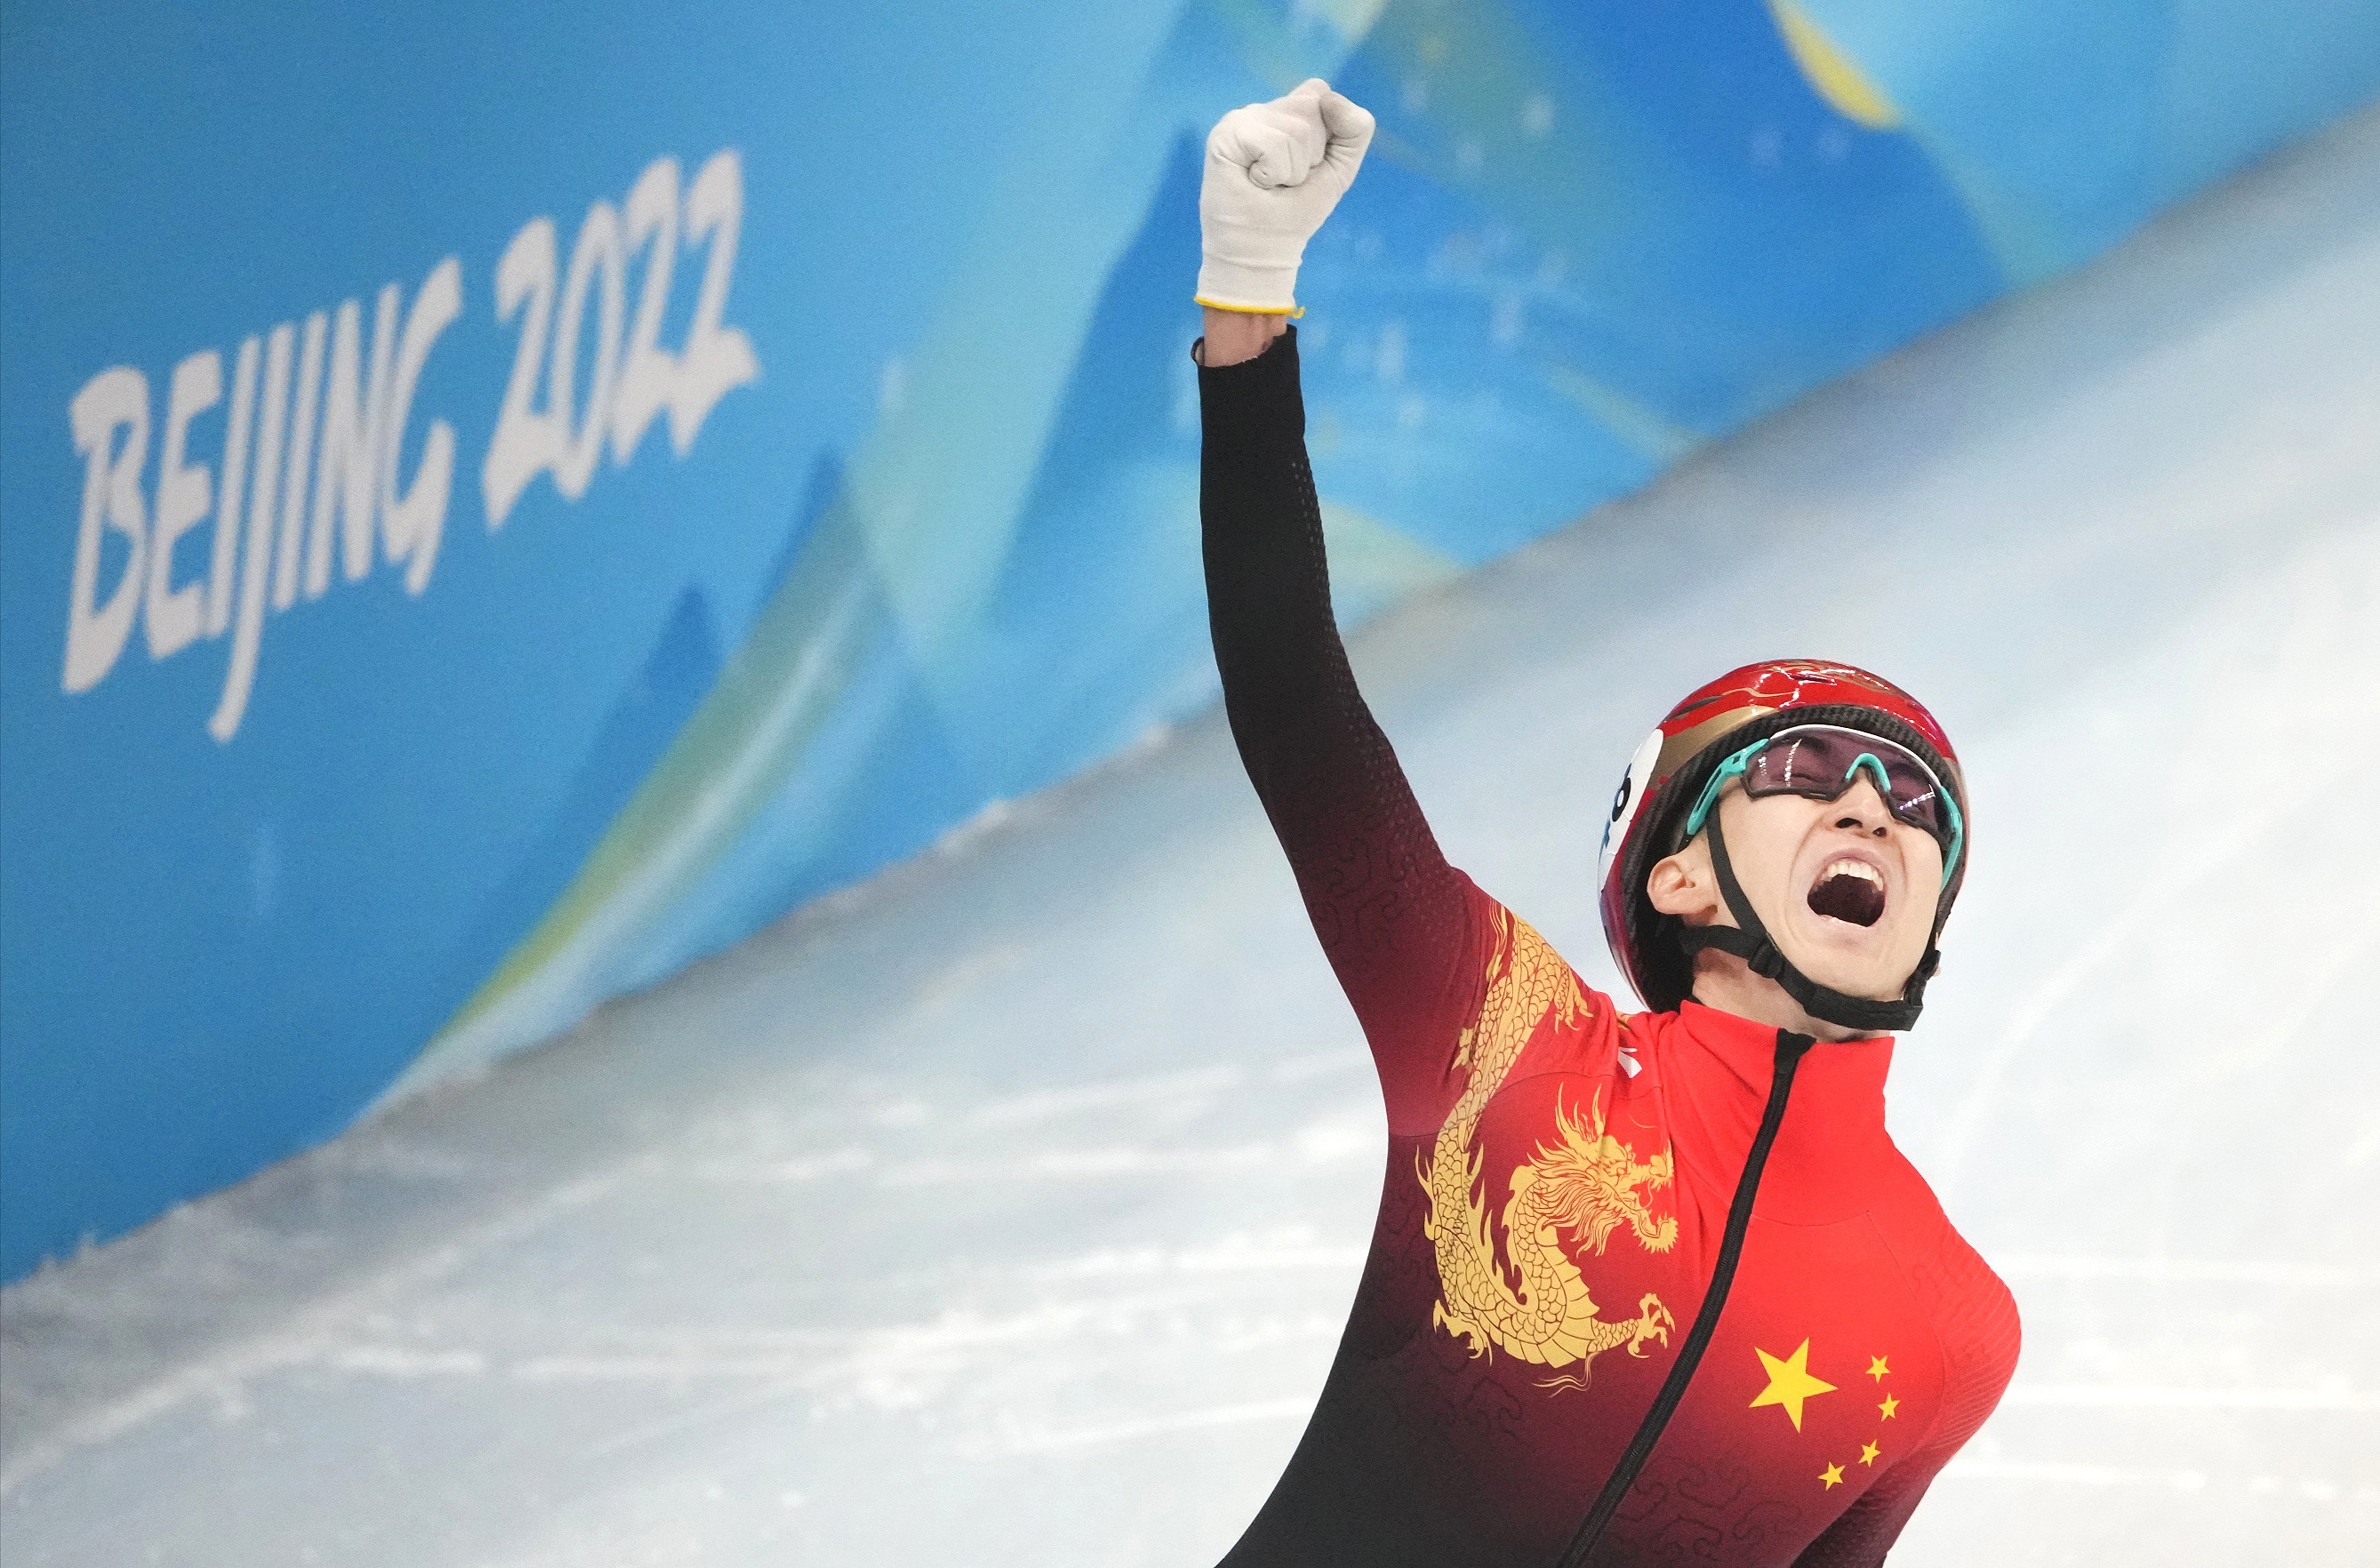 中国冬奥会夺金图片